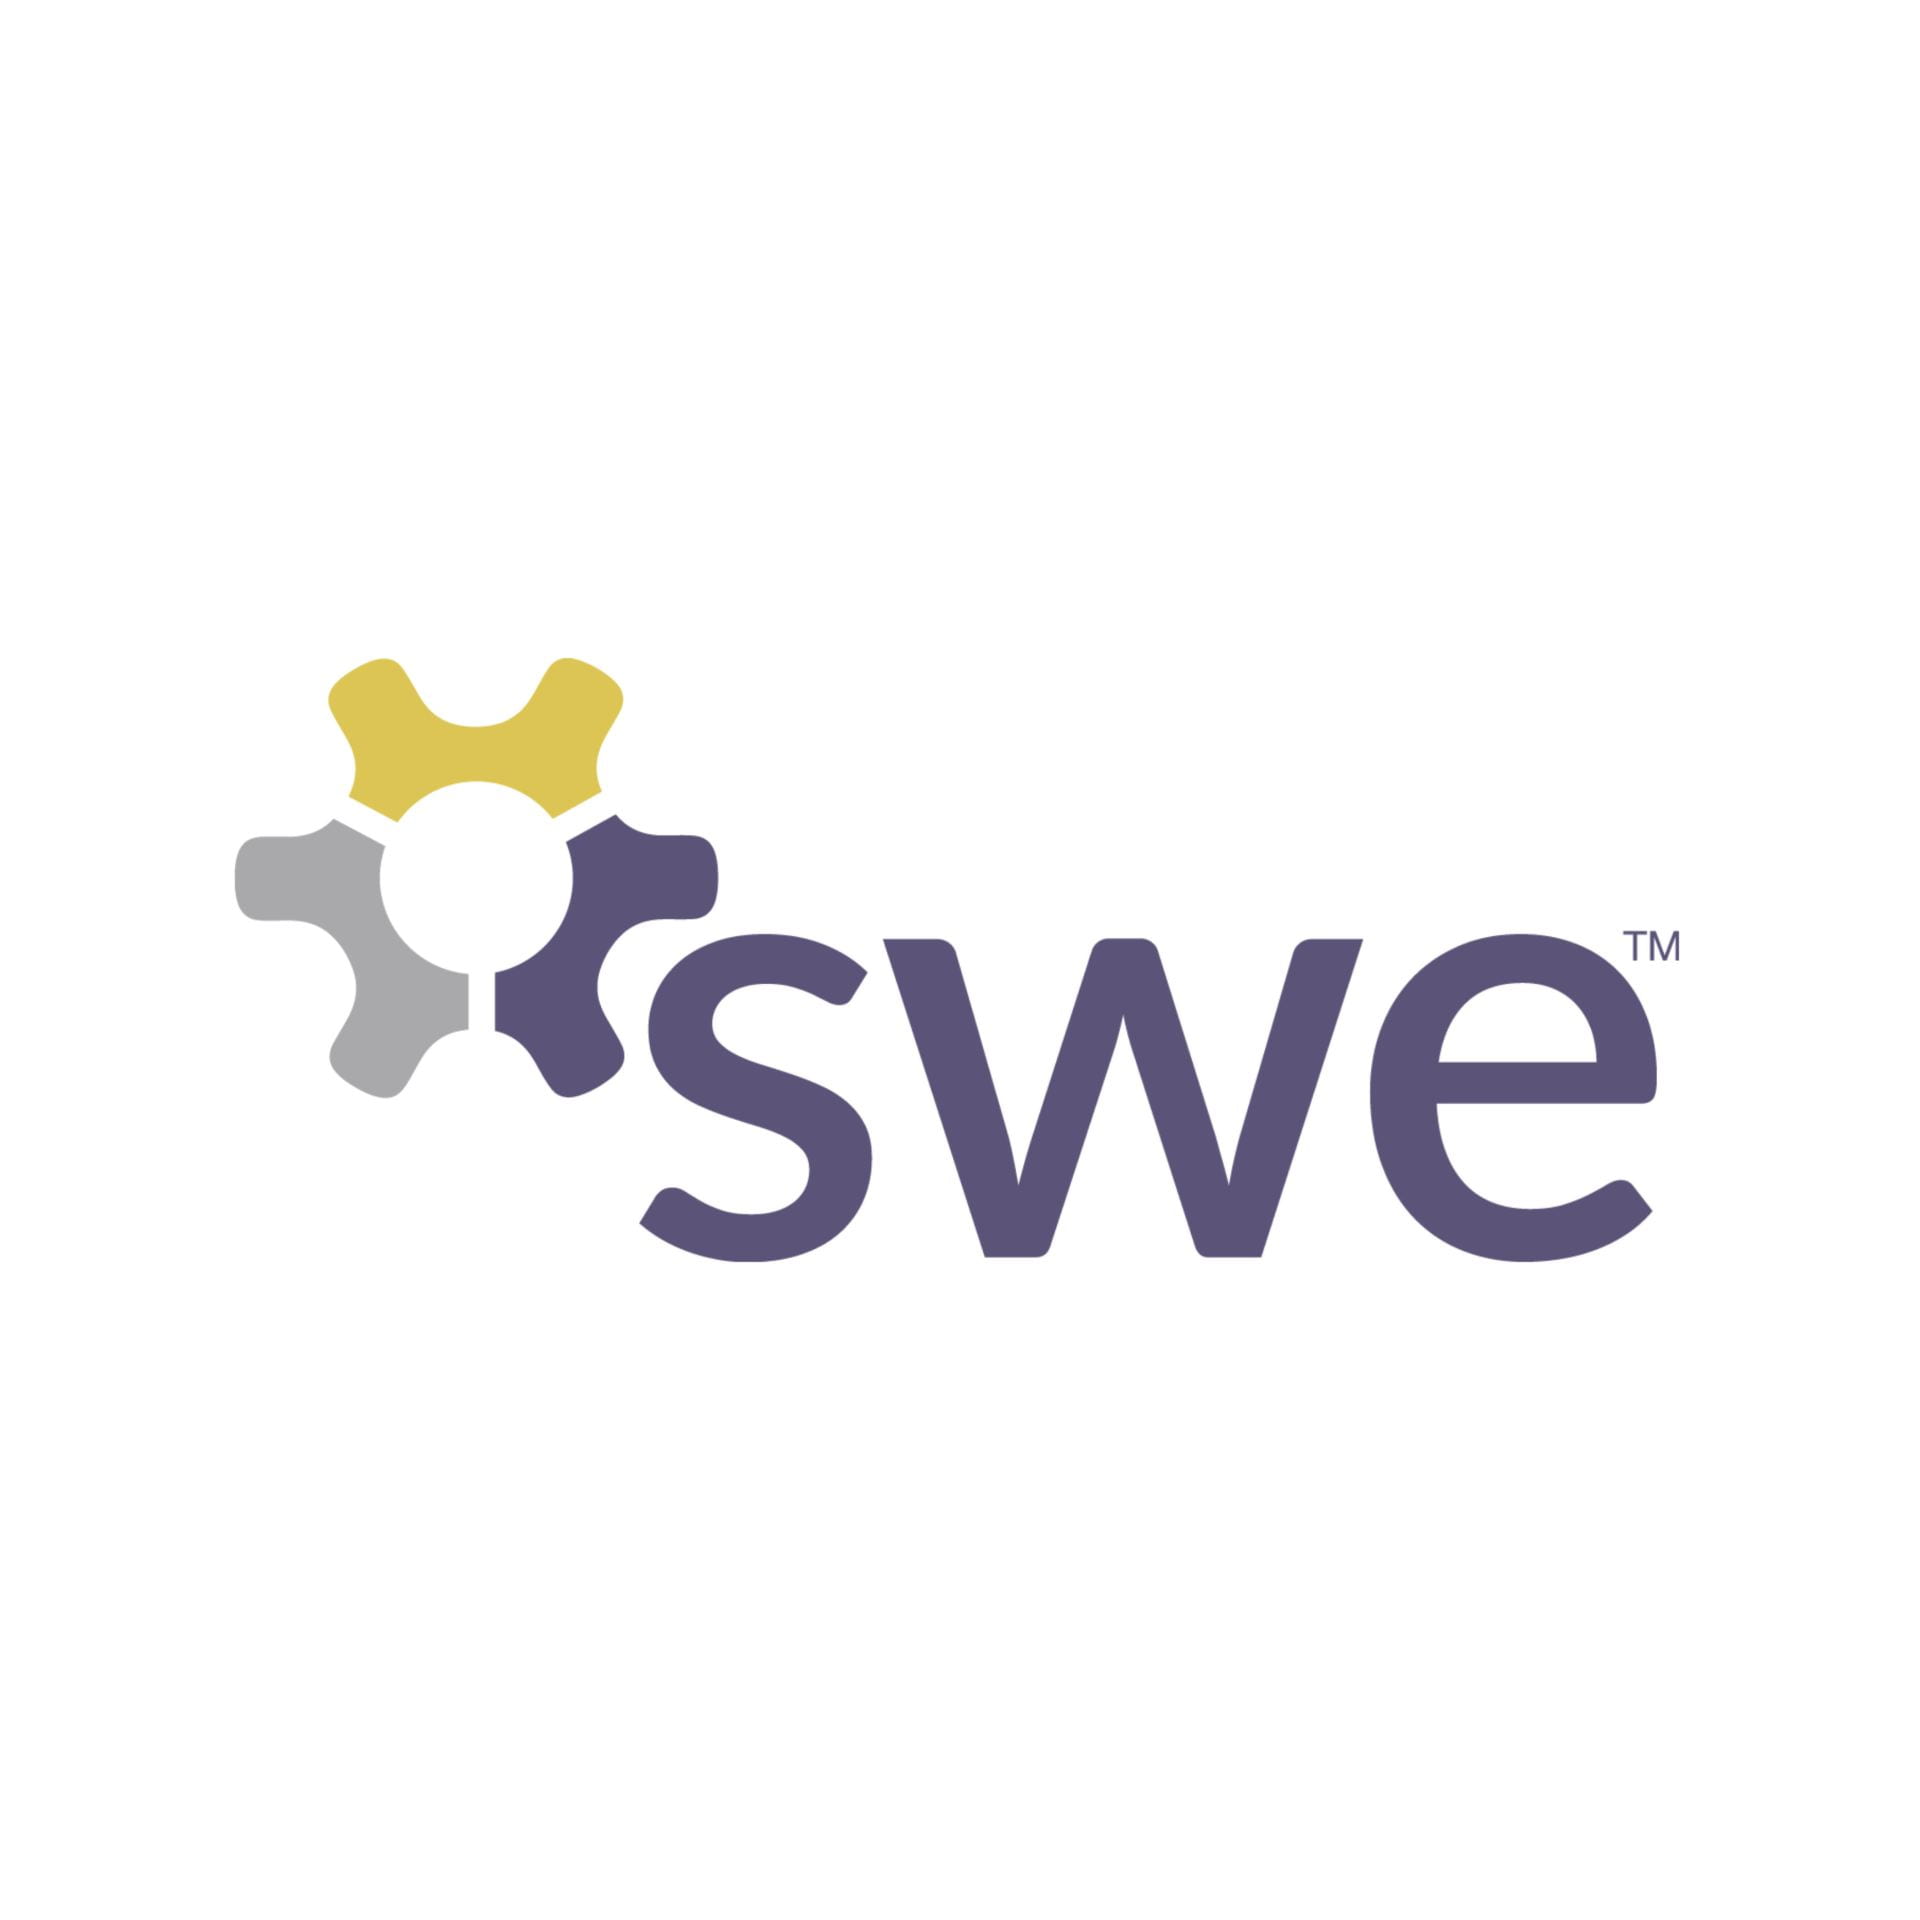 swe-logo